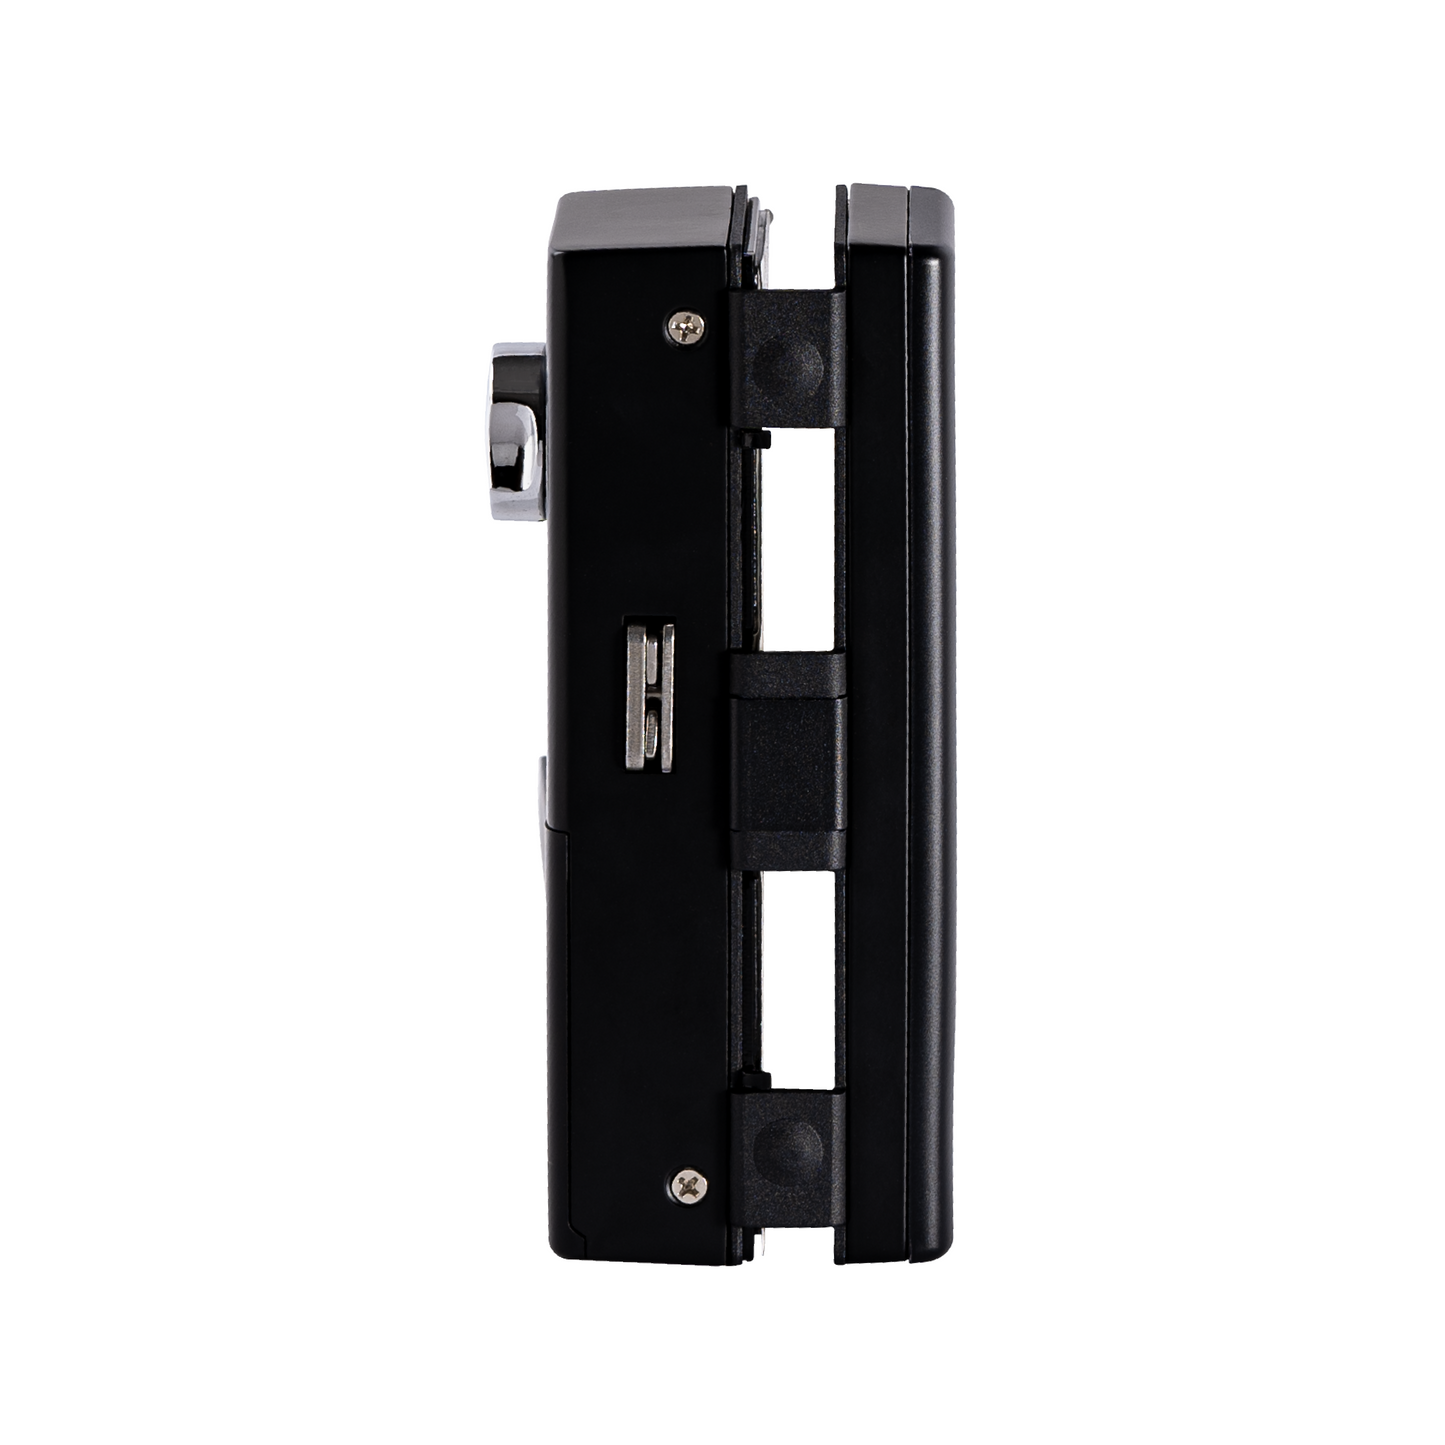 Glass Door Lock (G2G) with 4-way Unlock for Internal Doors | Free Installation | Door Thickness: 10-12 mm